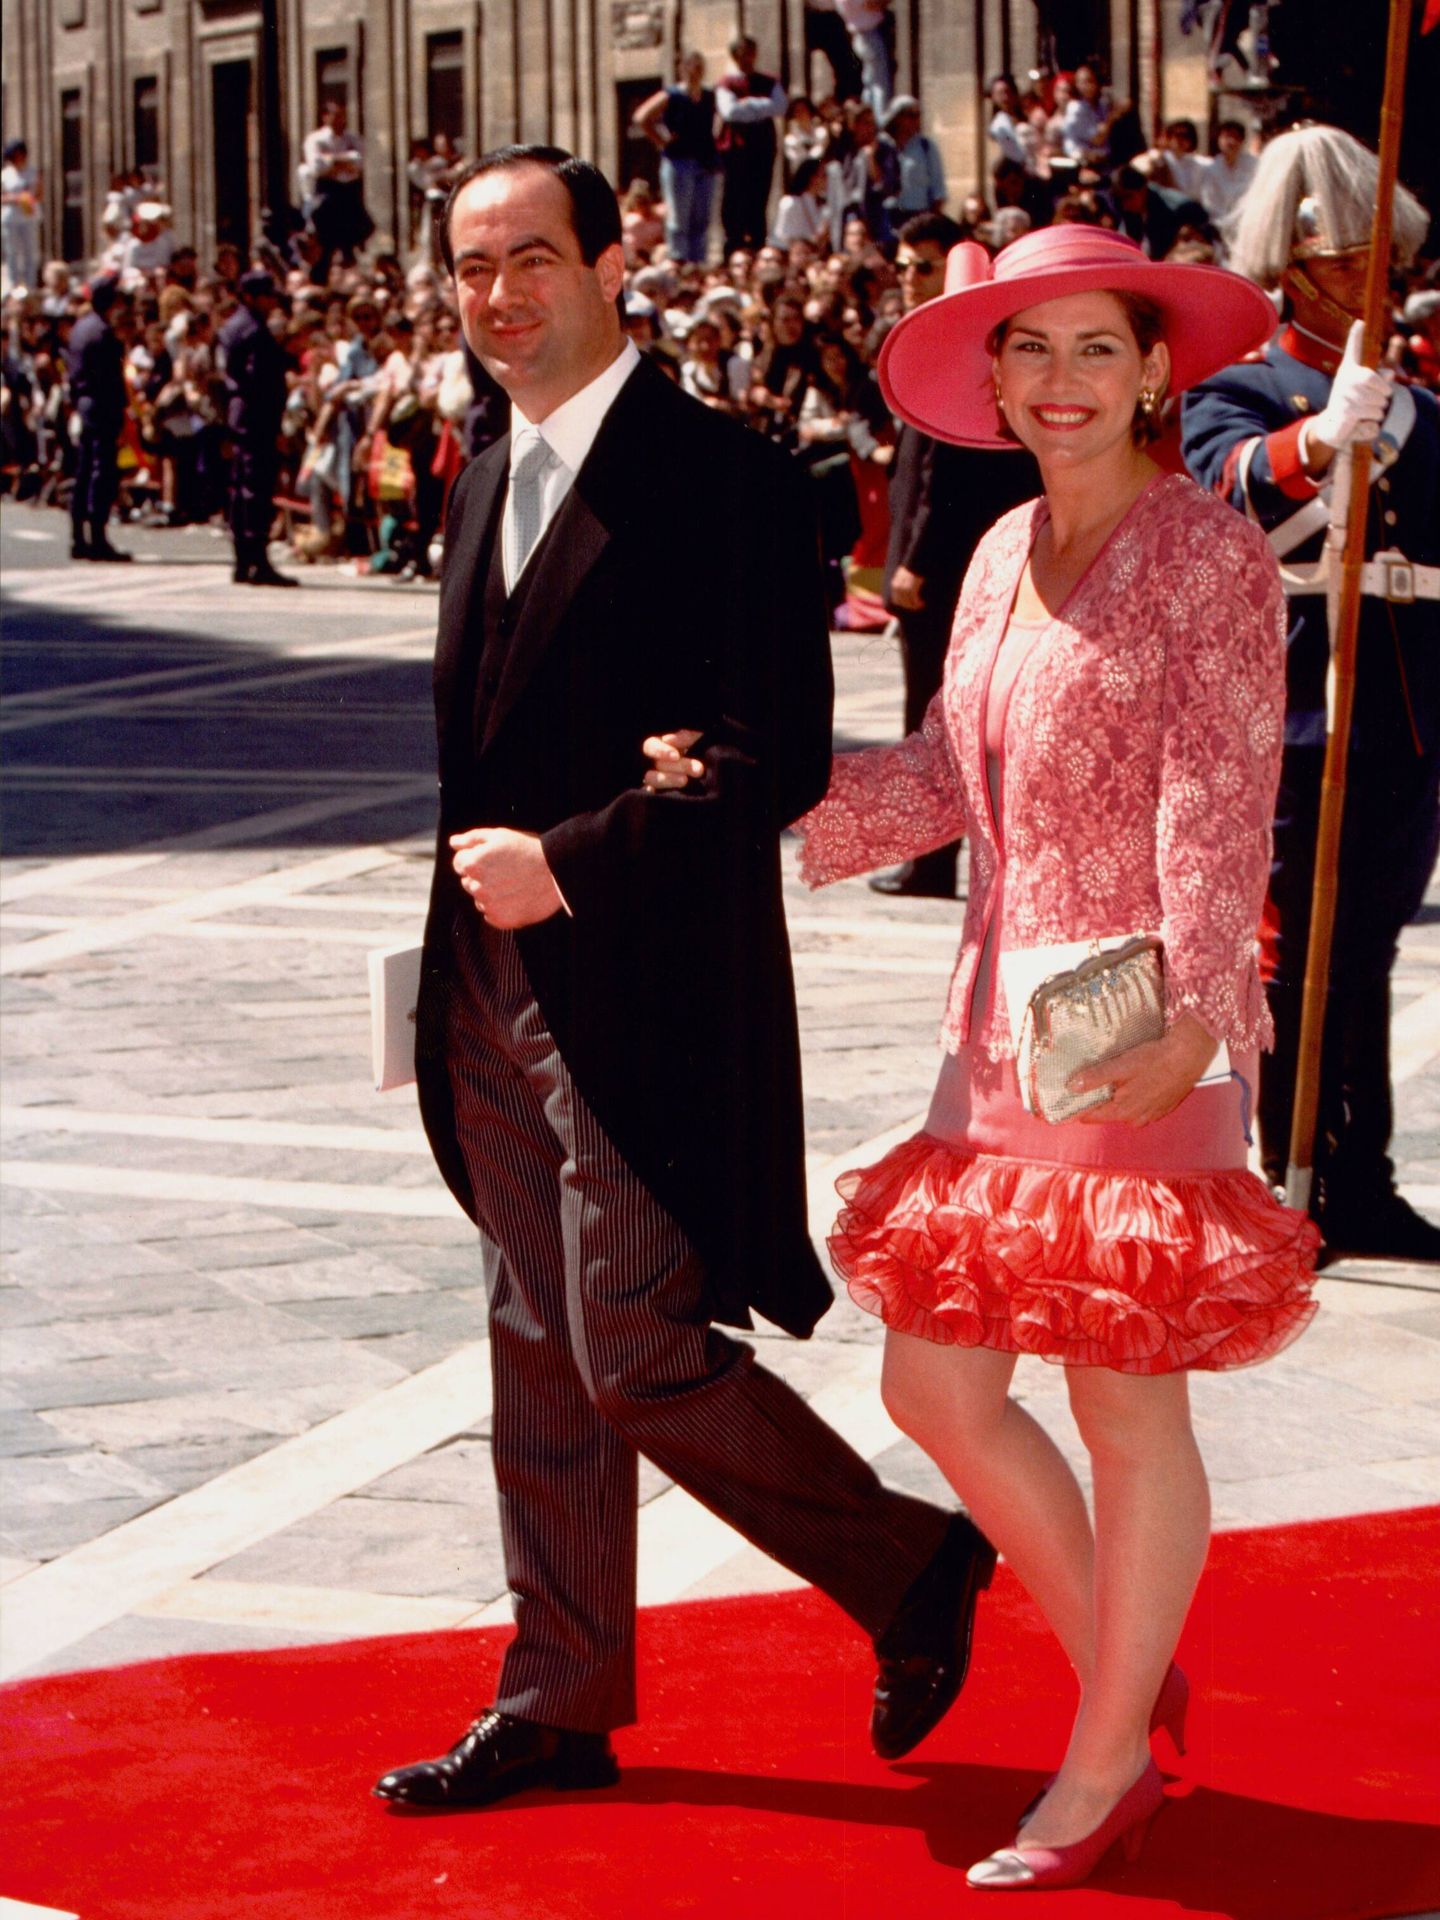 José Bono y Ana Rodríguez llegan a la boda de los duques de Lugo. (Cortesía José Bono)